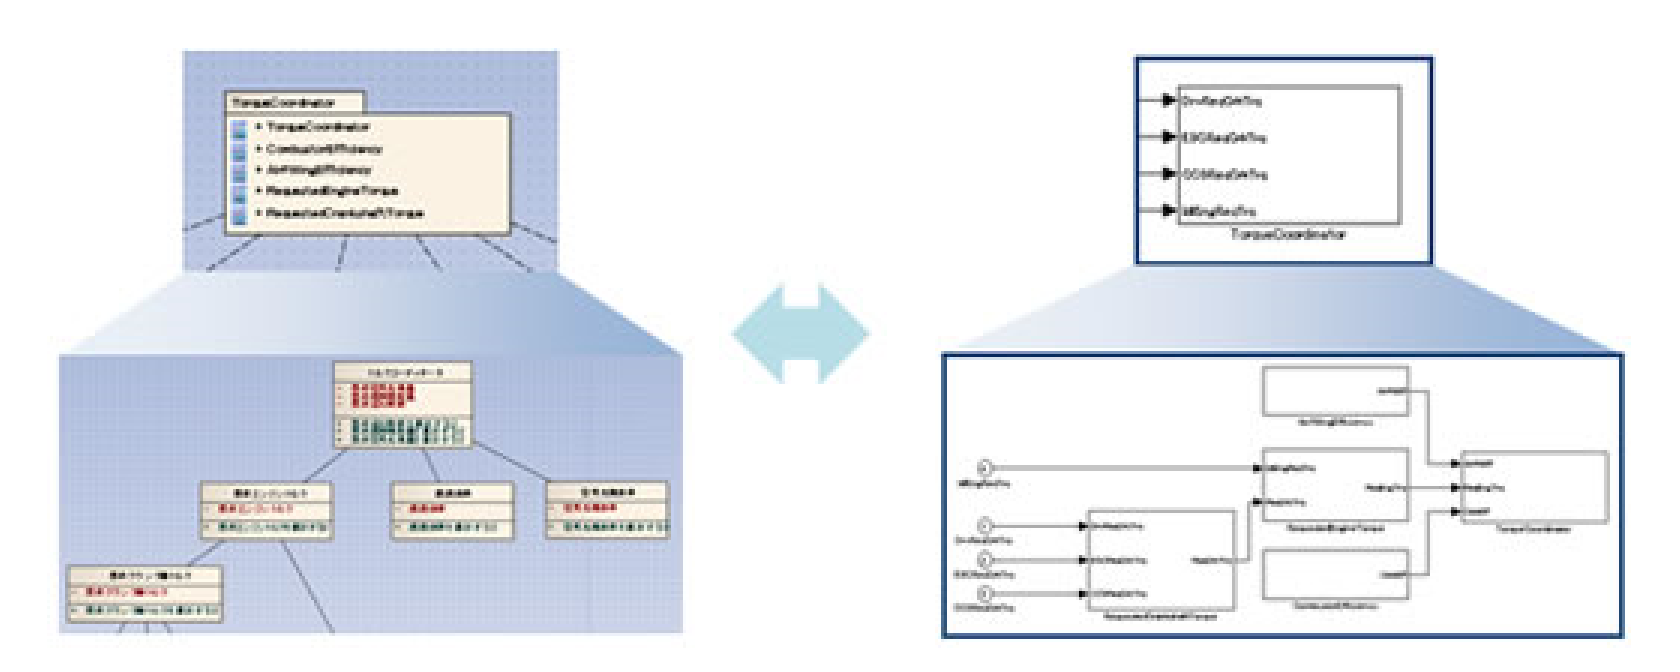 SysML･UML・DFD（データフローダイアグラム図）等の汎用モデリング言語で記述されたアーキテクチャモデルと、MATLAB／Simulink のモデルを相互に変換するモデル変換ツール『mtrip』【UMLクラス図・パッケージ図】